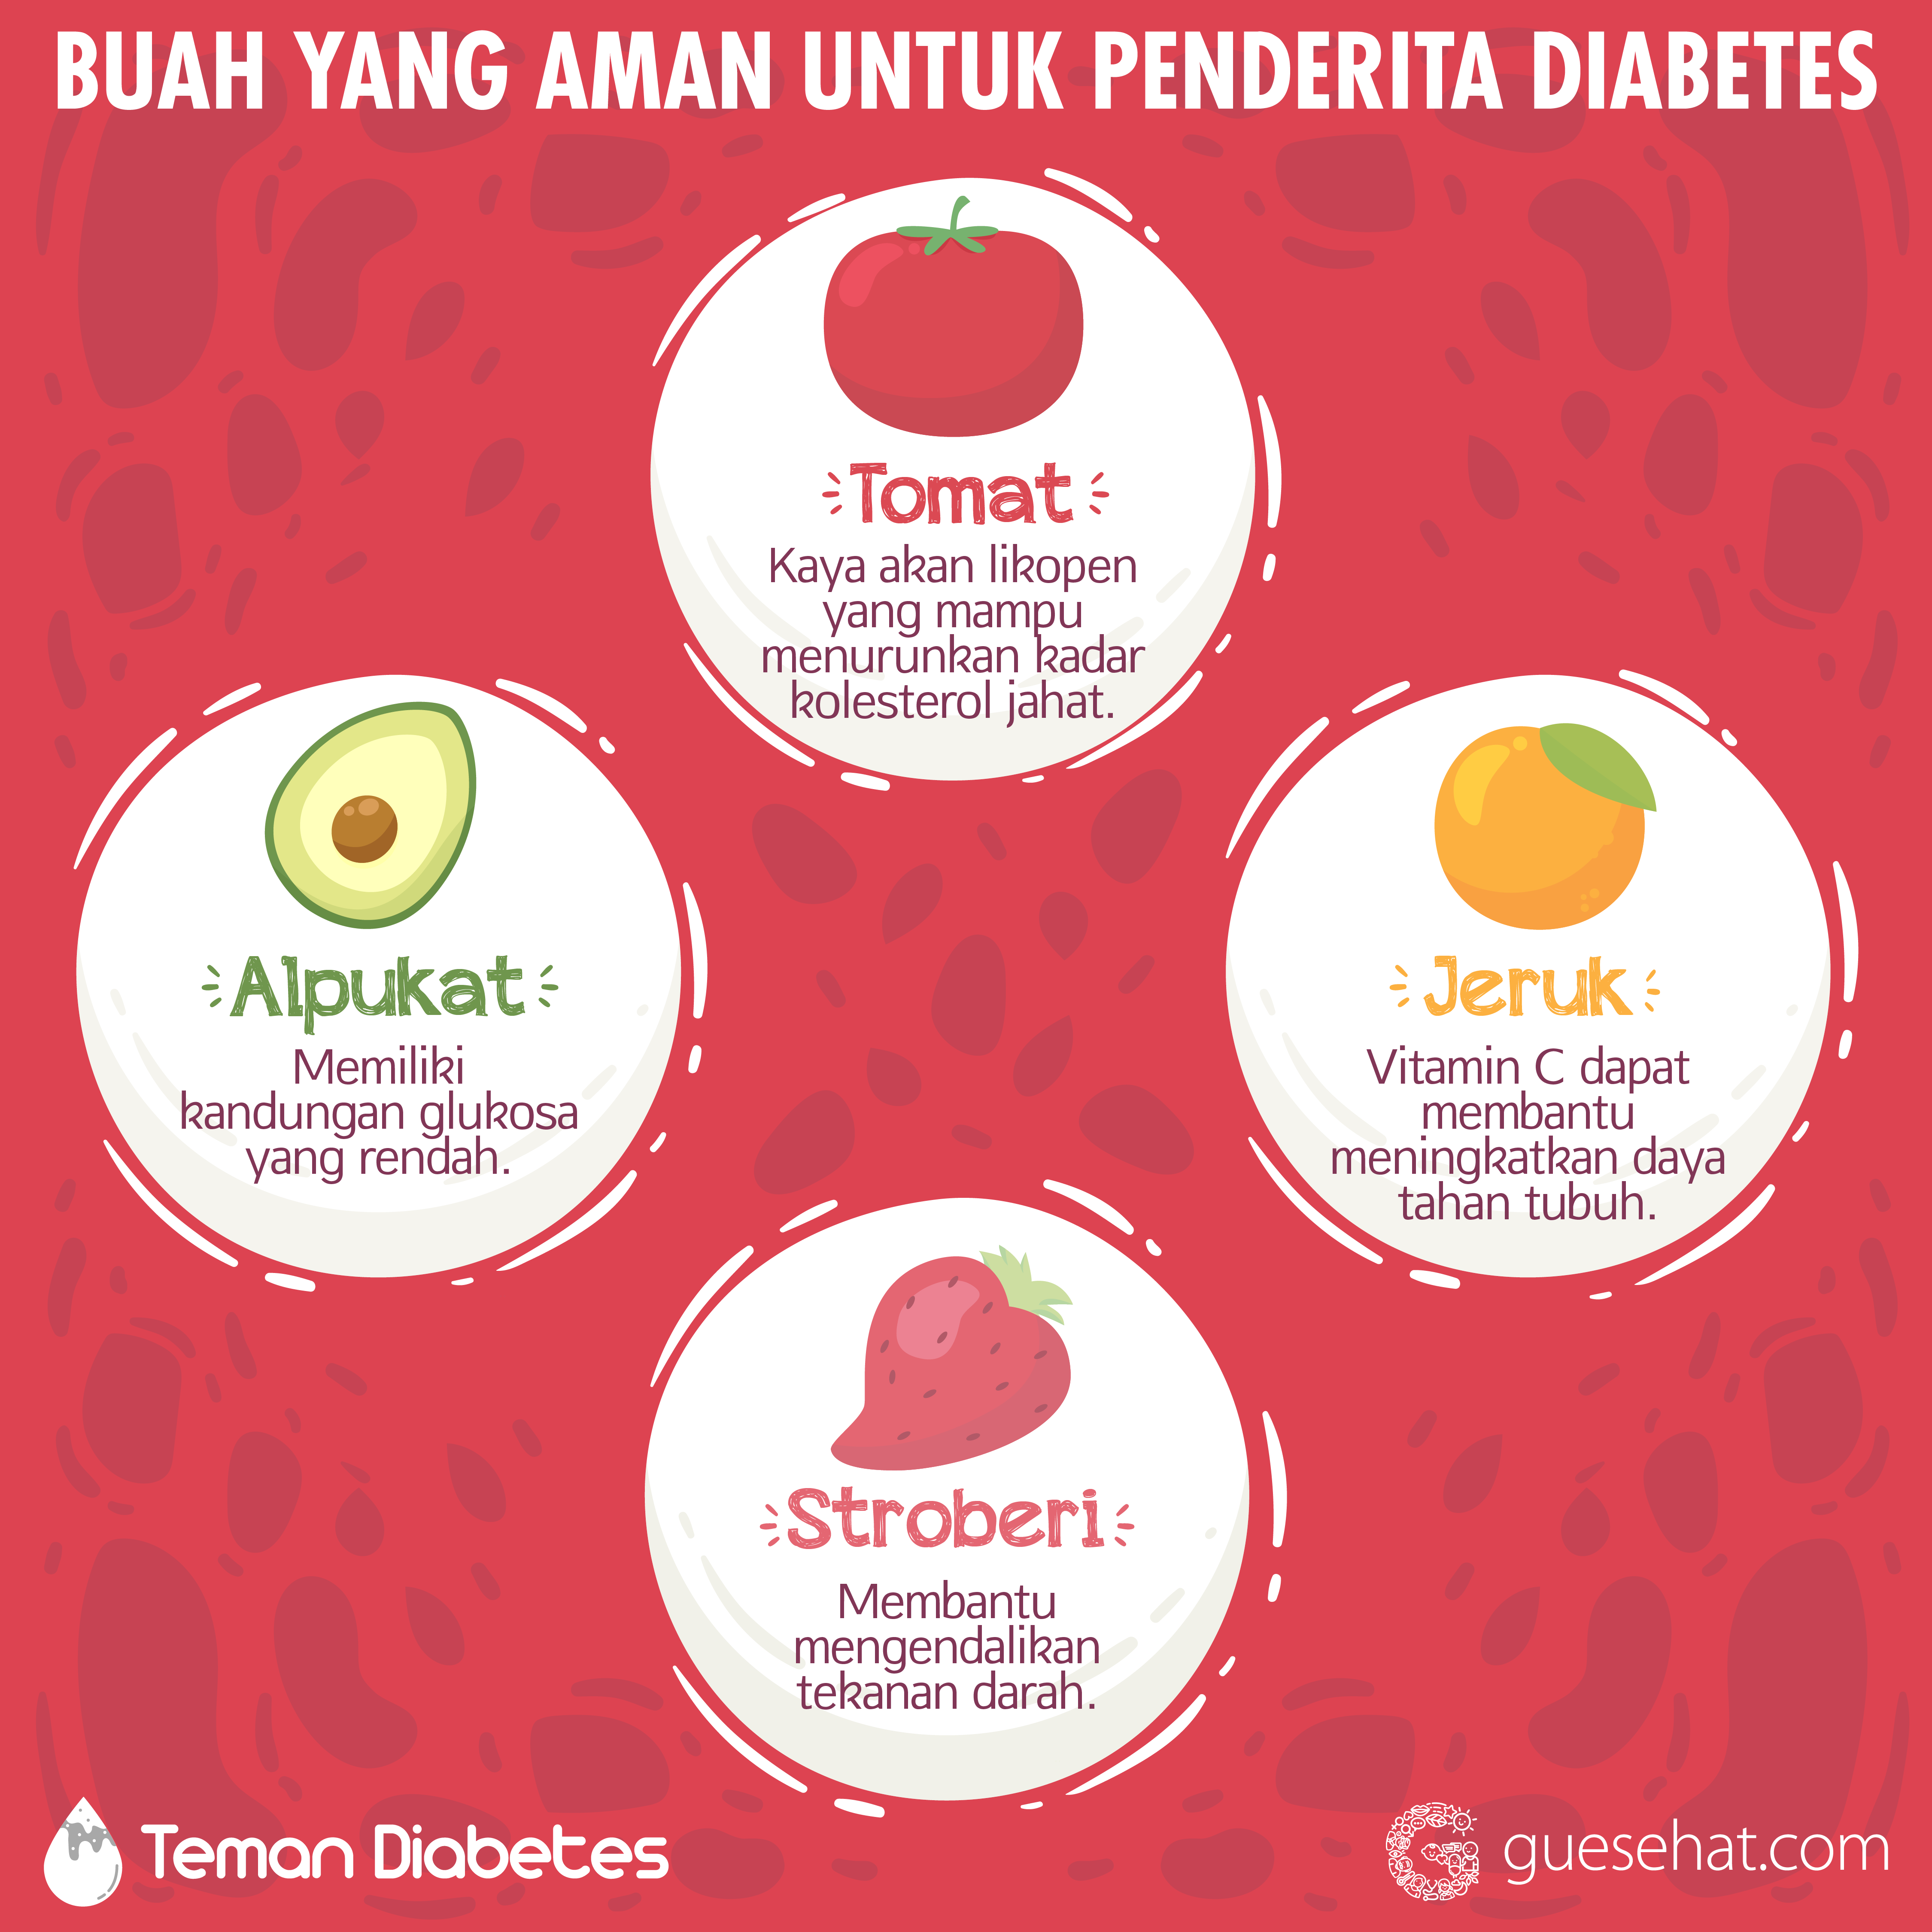 Frutas que son seguras para la diabetes